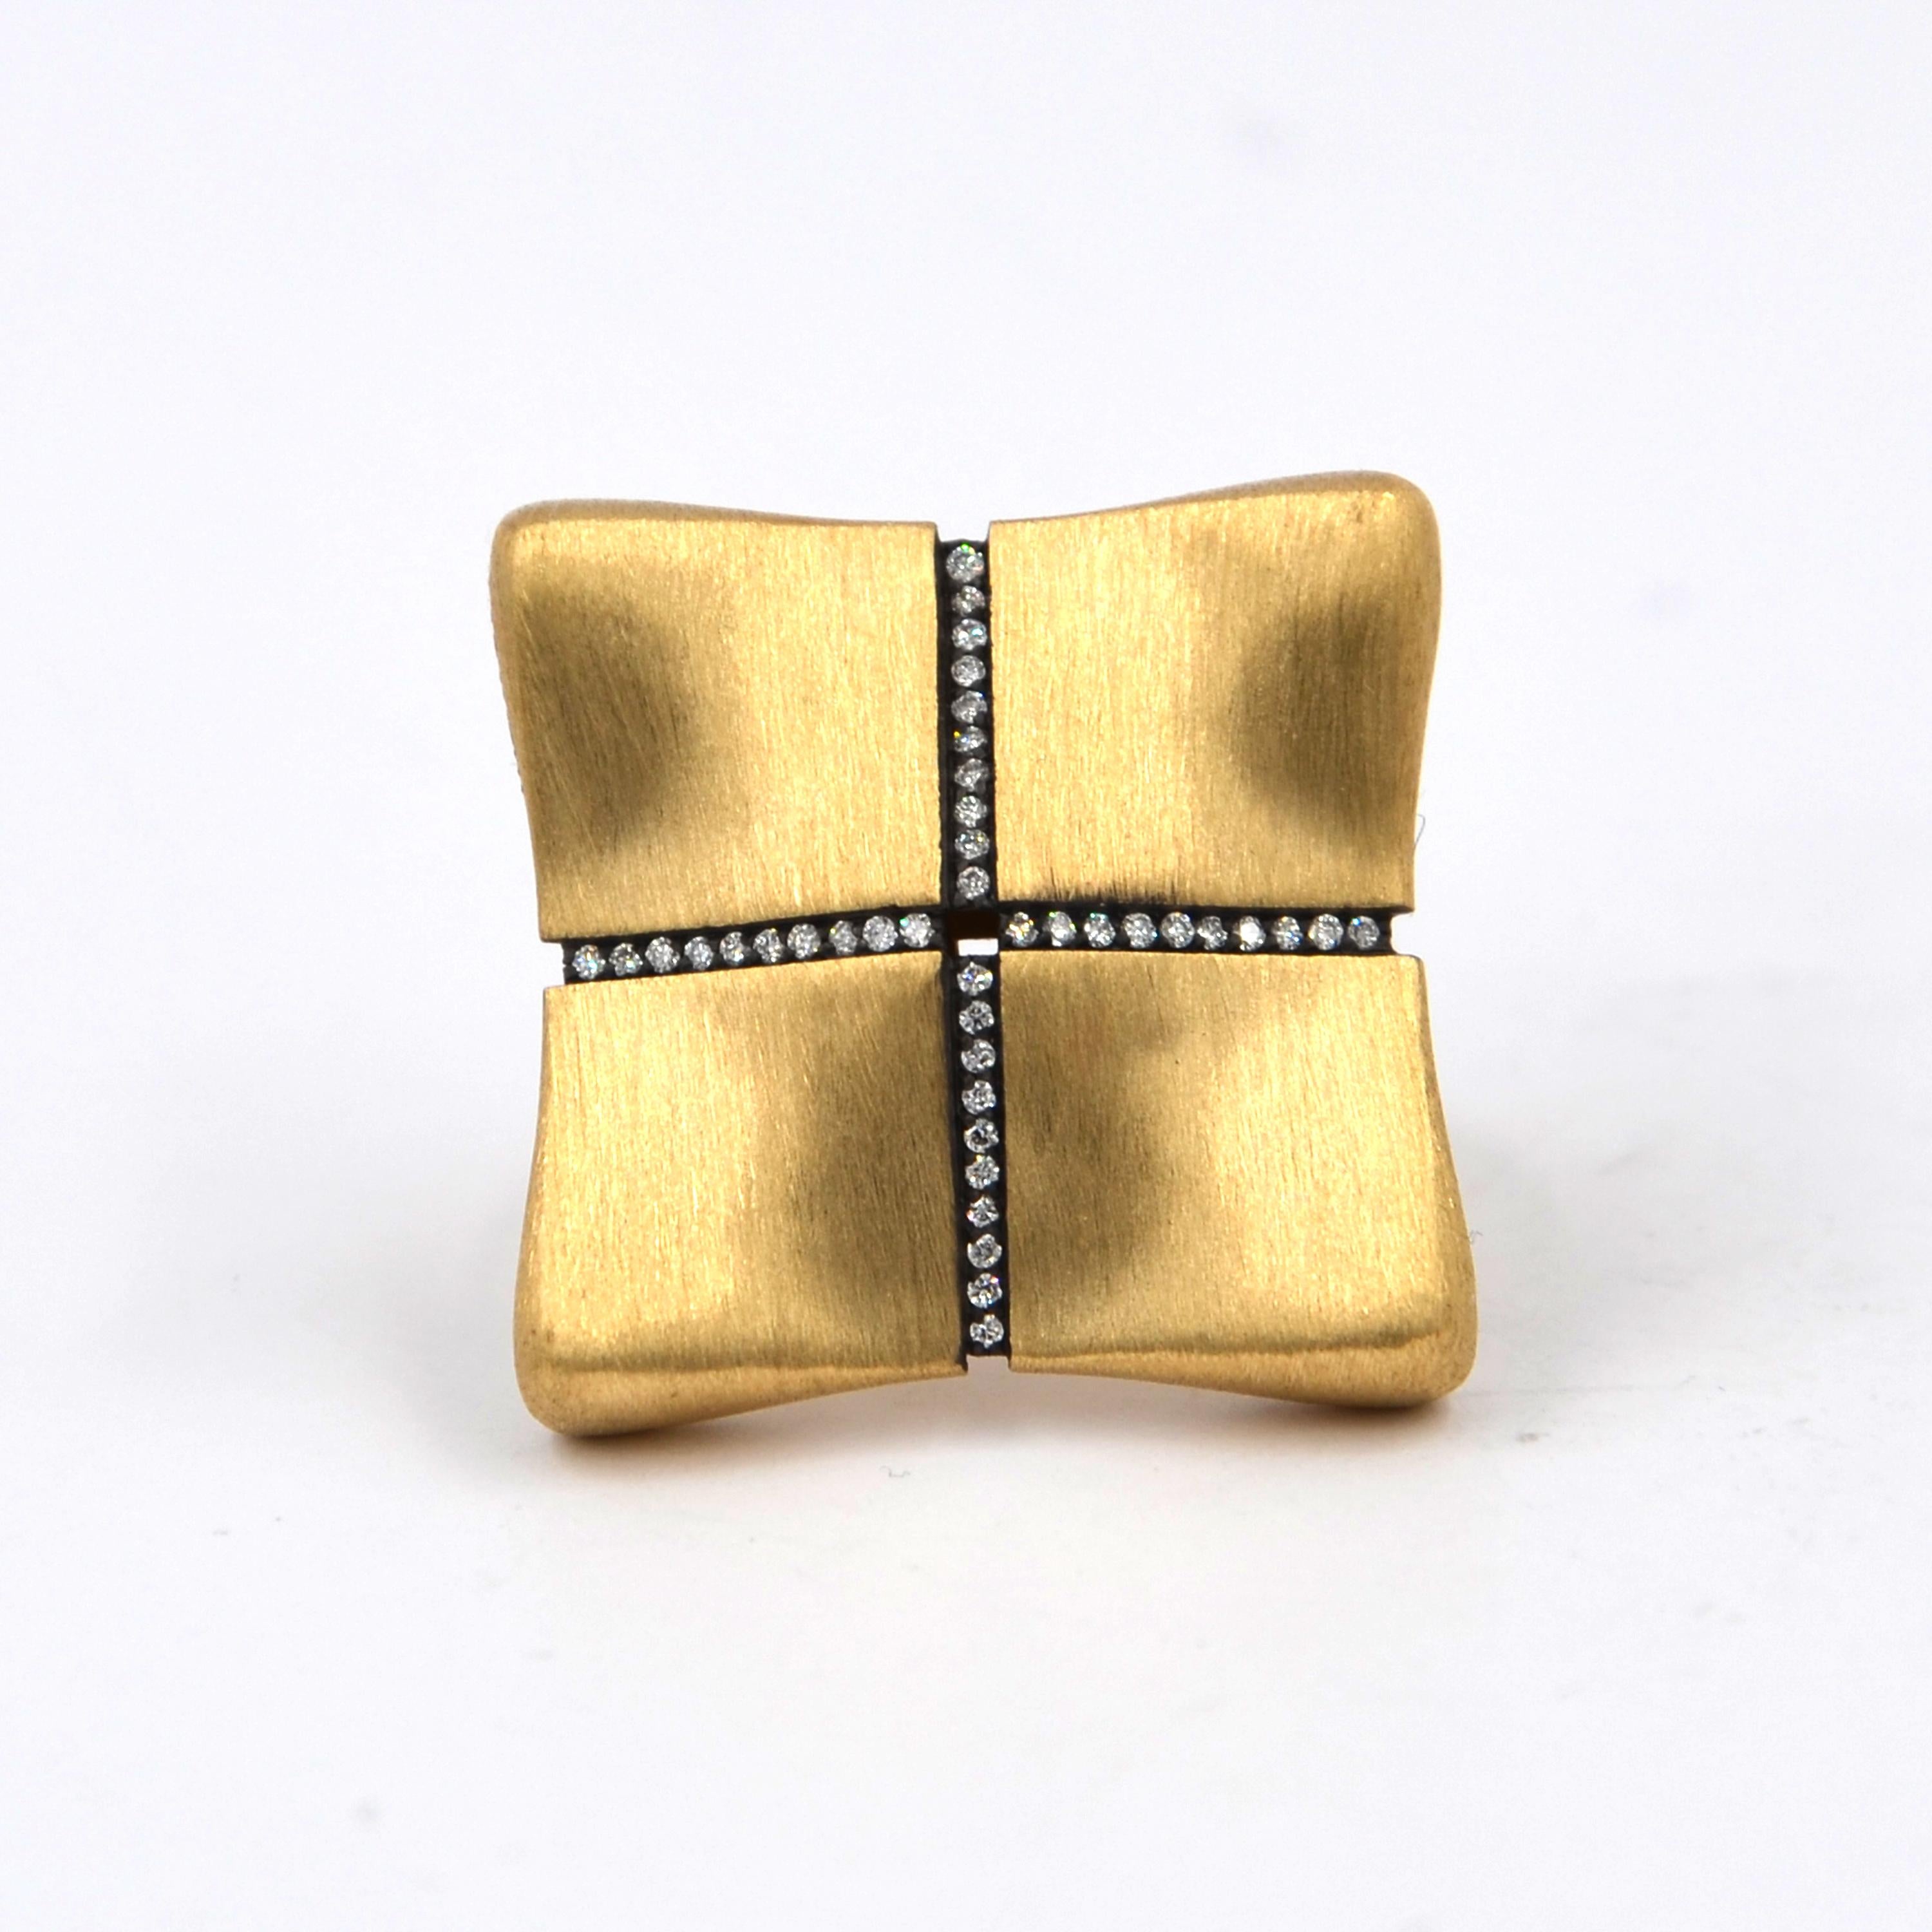 Garavelli 18 Karat Rose Gold White Diamonds Award Collection Ring 3